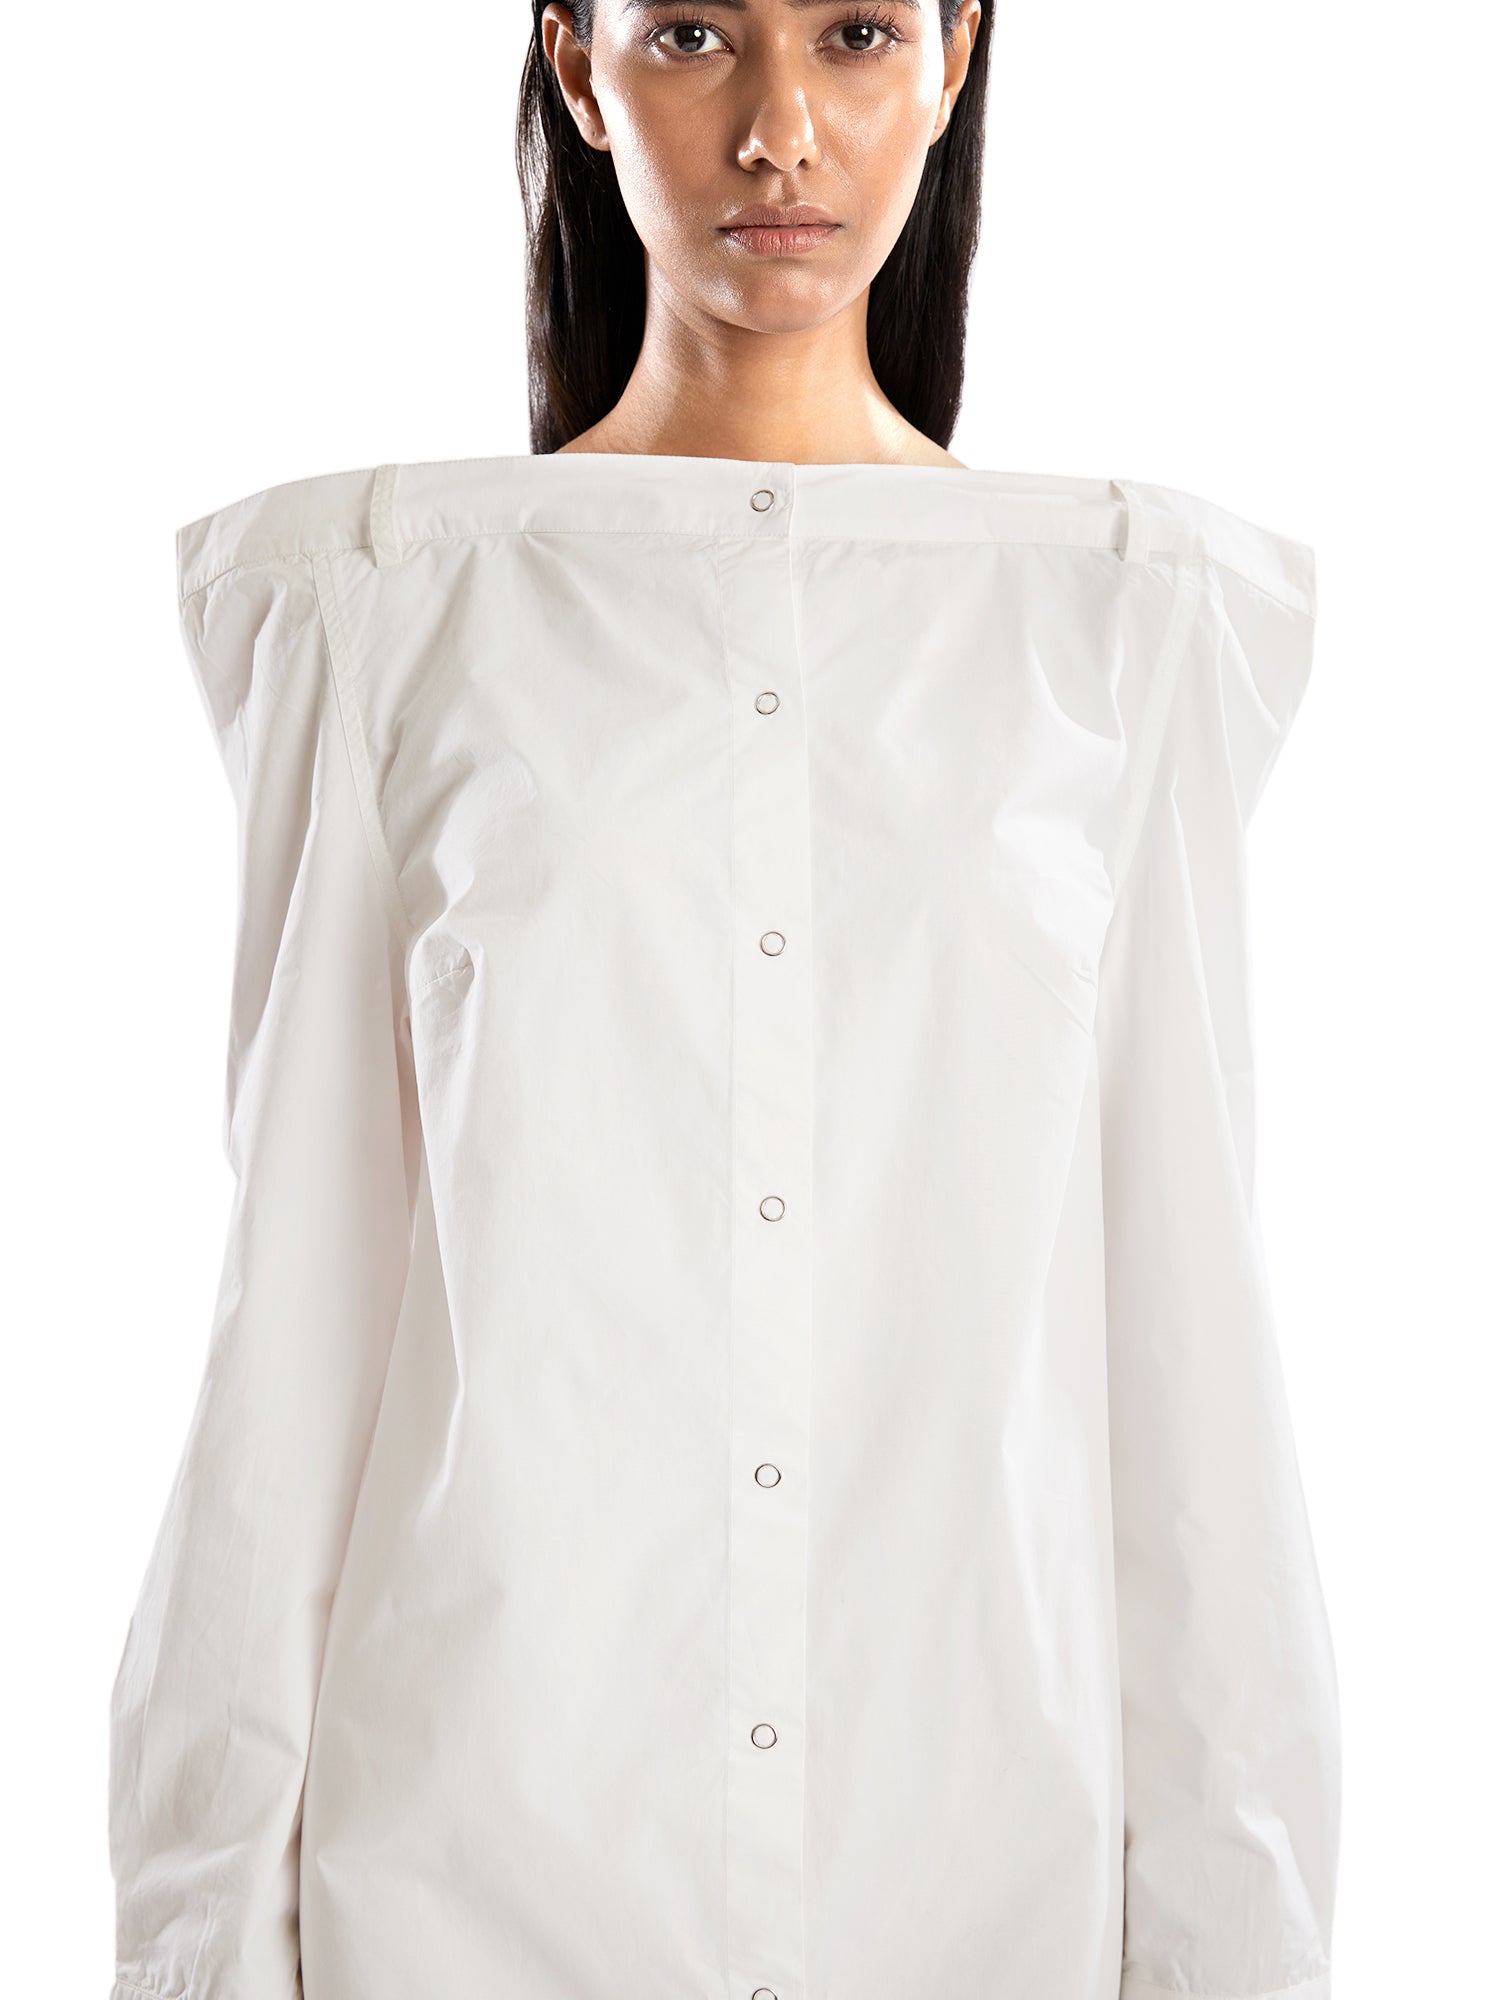 White straight shoulder shirt